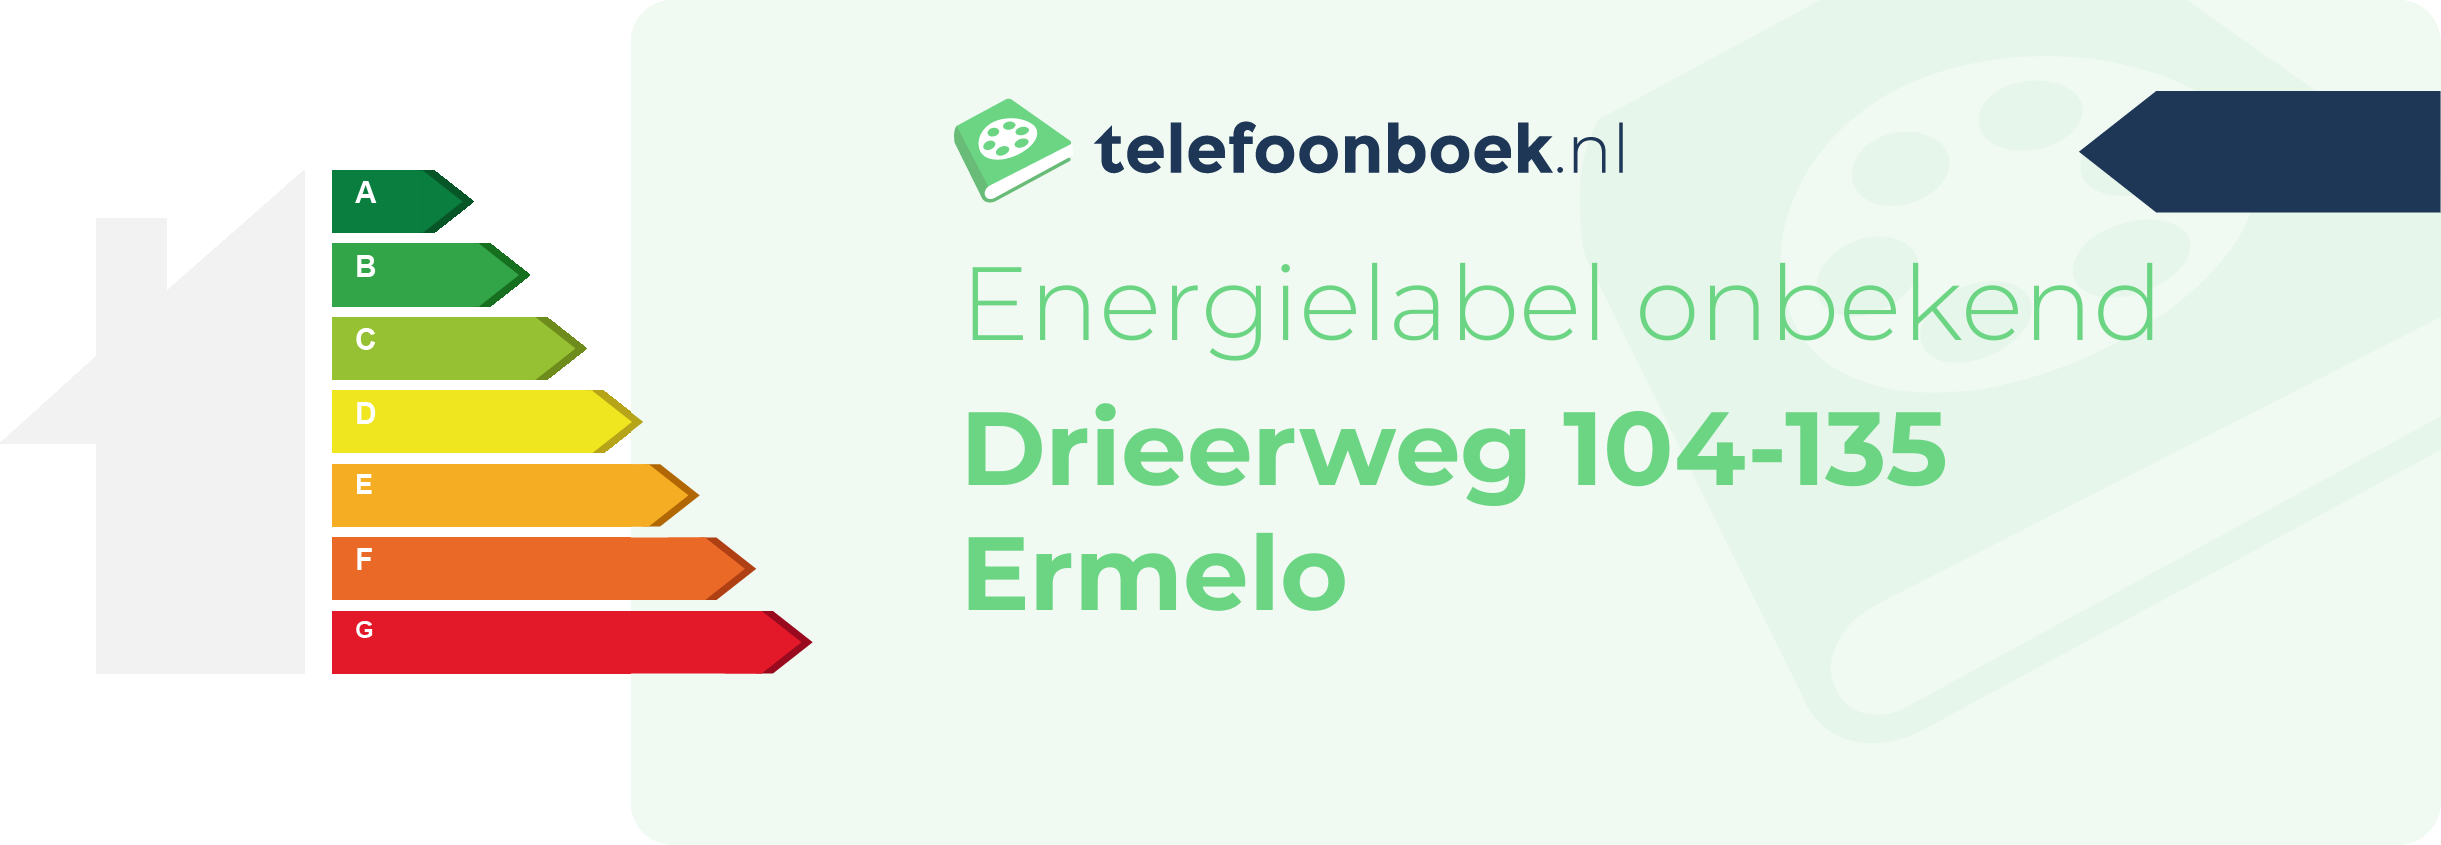 Energielabel Drieerweg 104-135 Ermelo